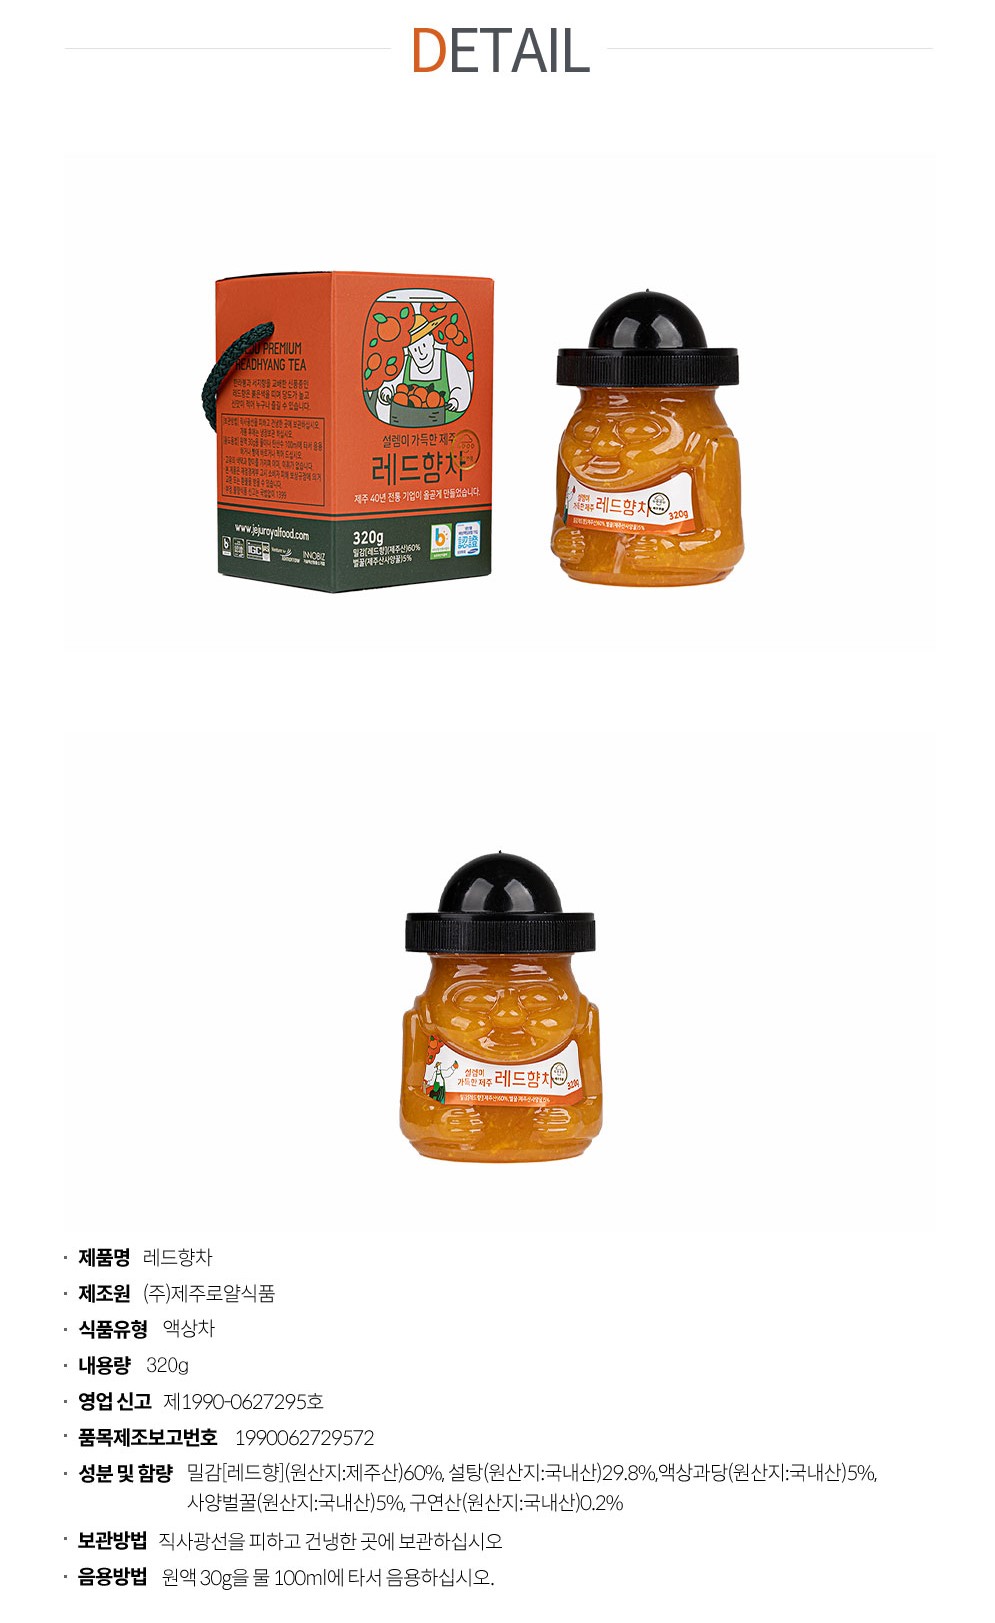 韓國食品-[제주로얄] 레드향차 320g